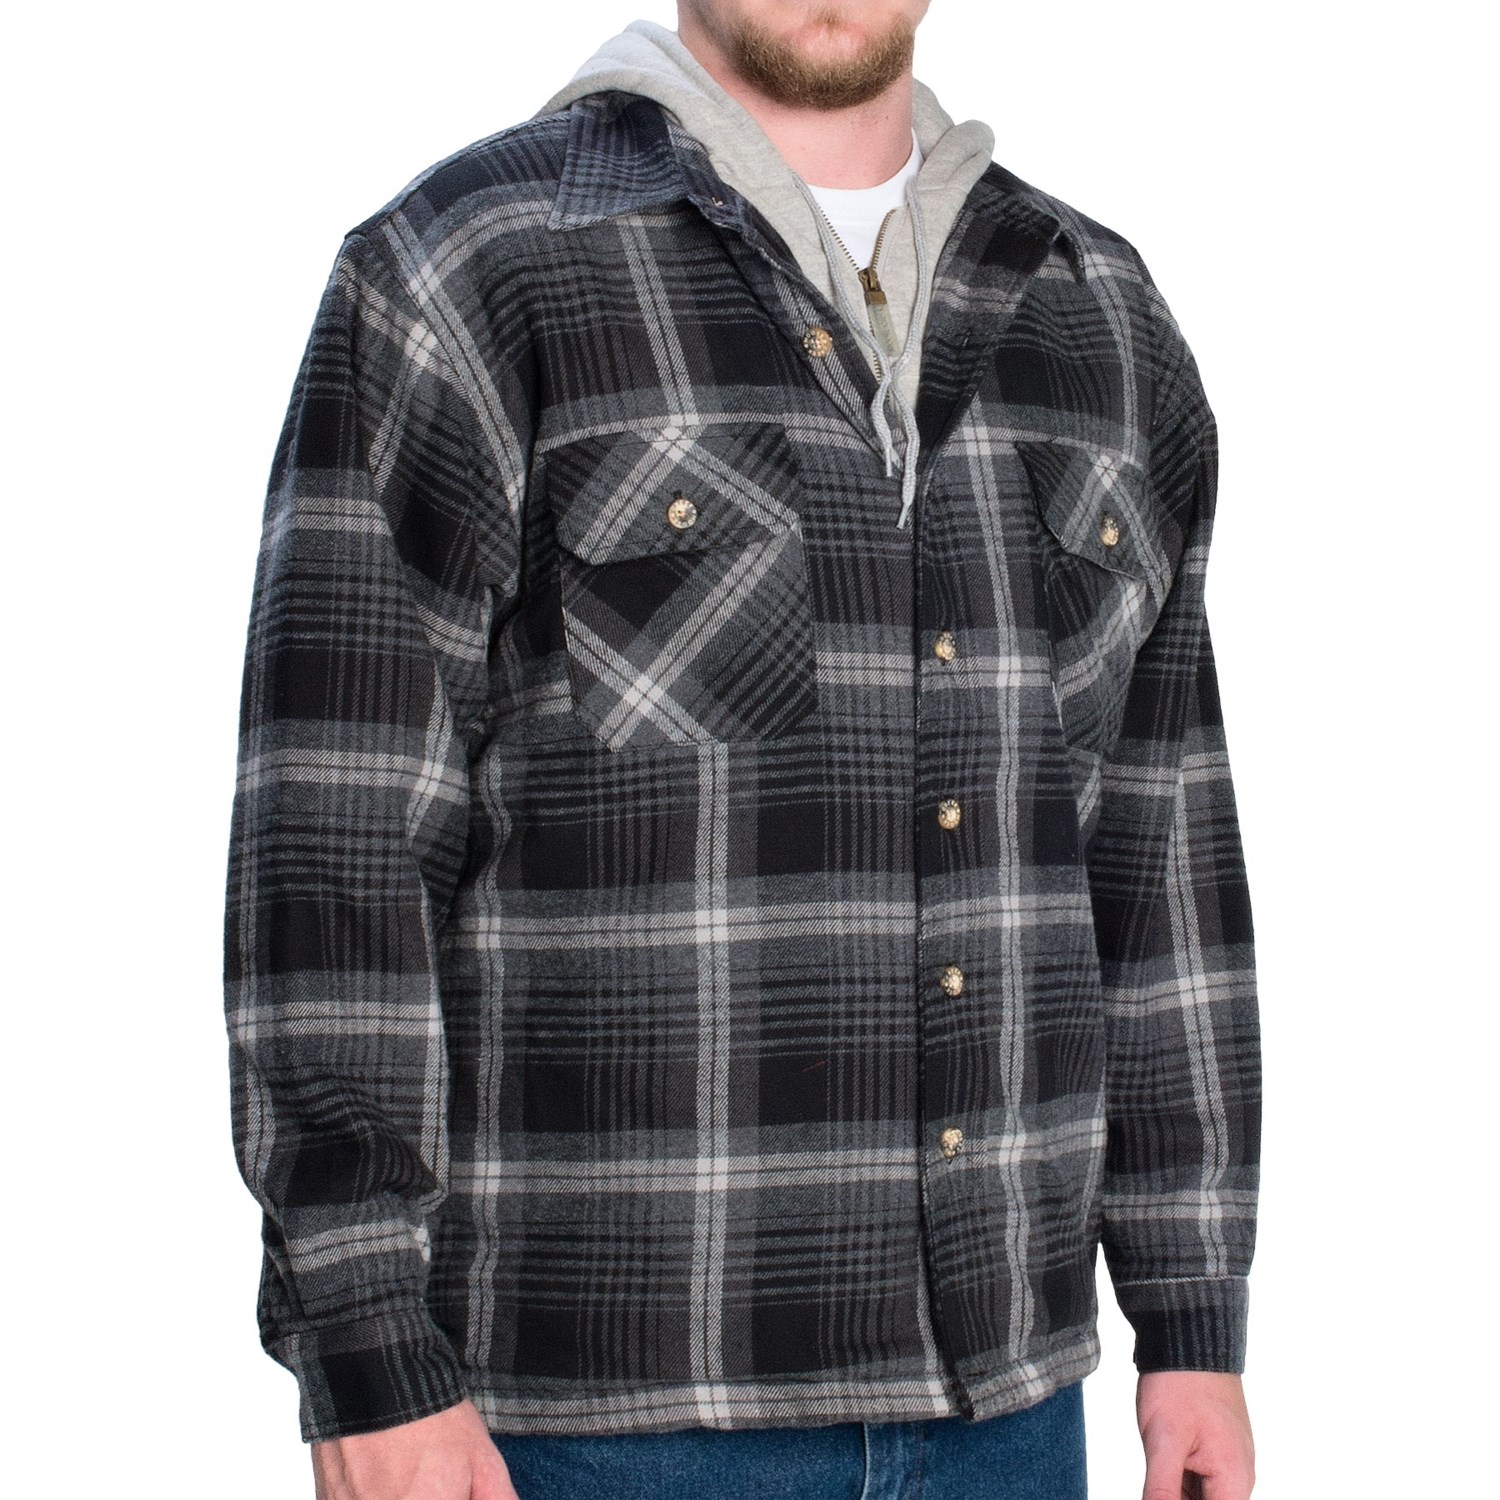 Moose Creek Quilted Hoodie Sweatshirt (For Men) - Save 53%